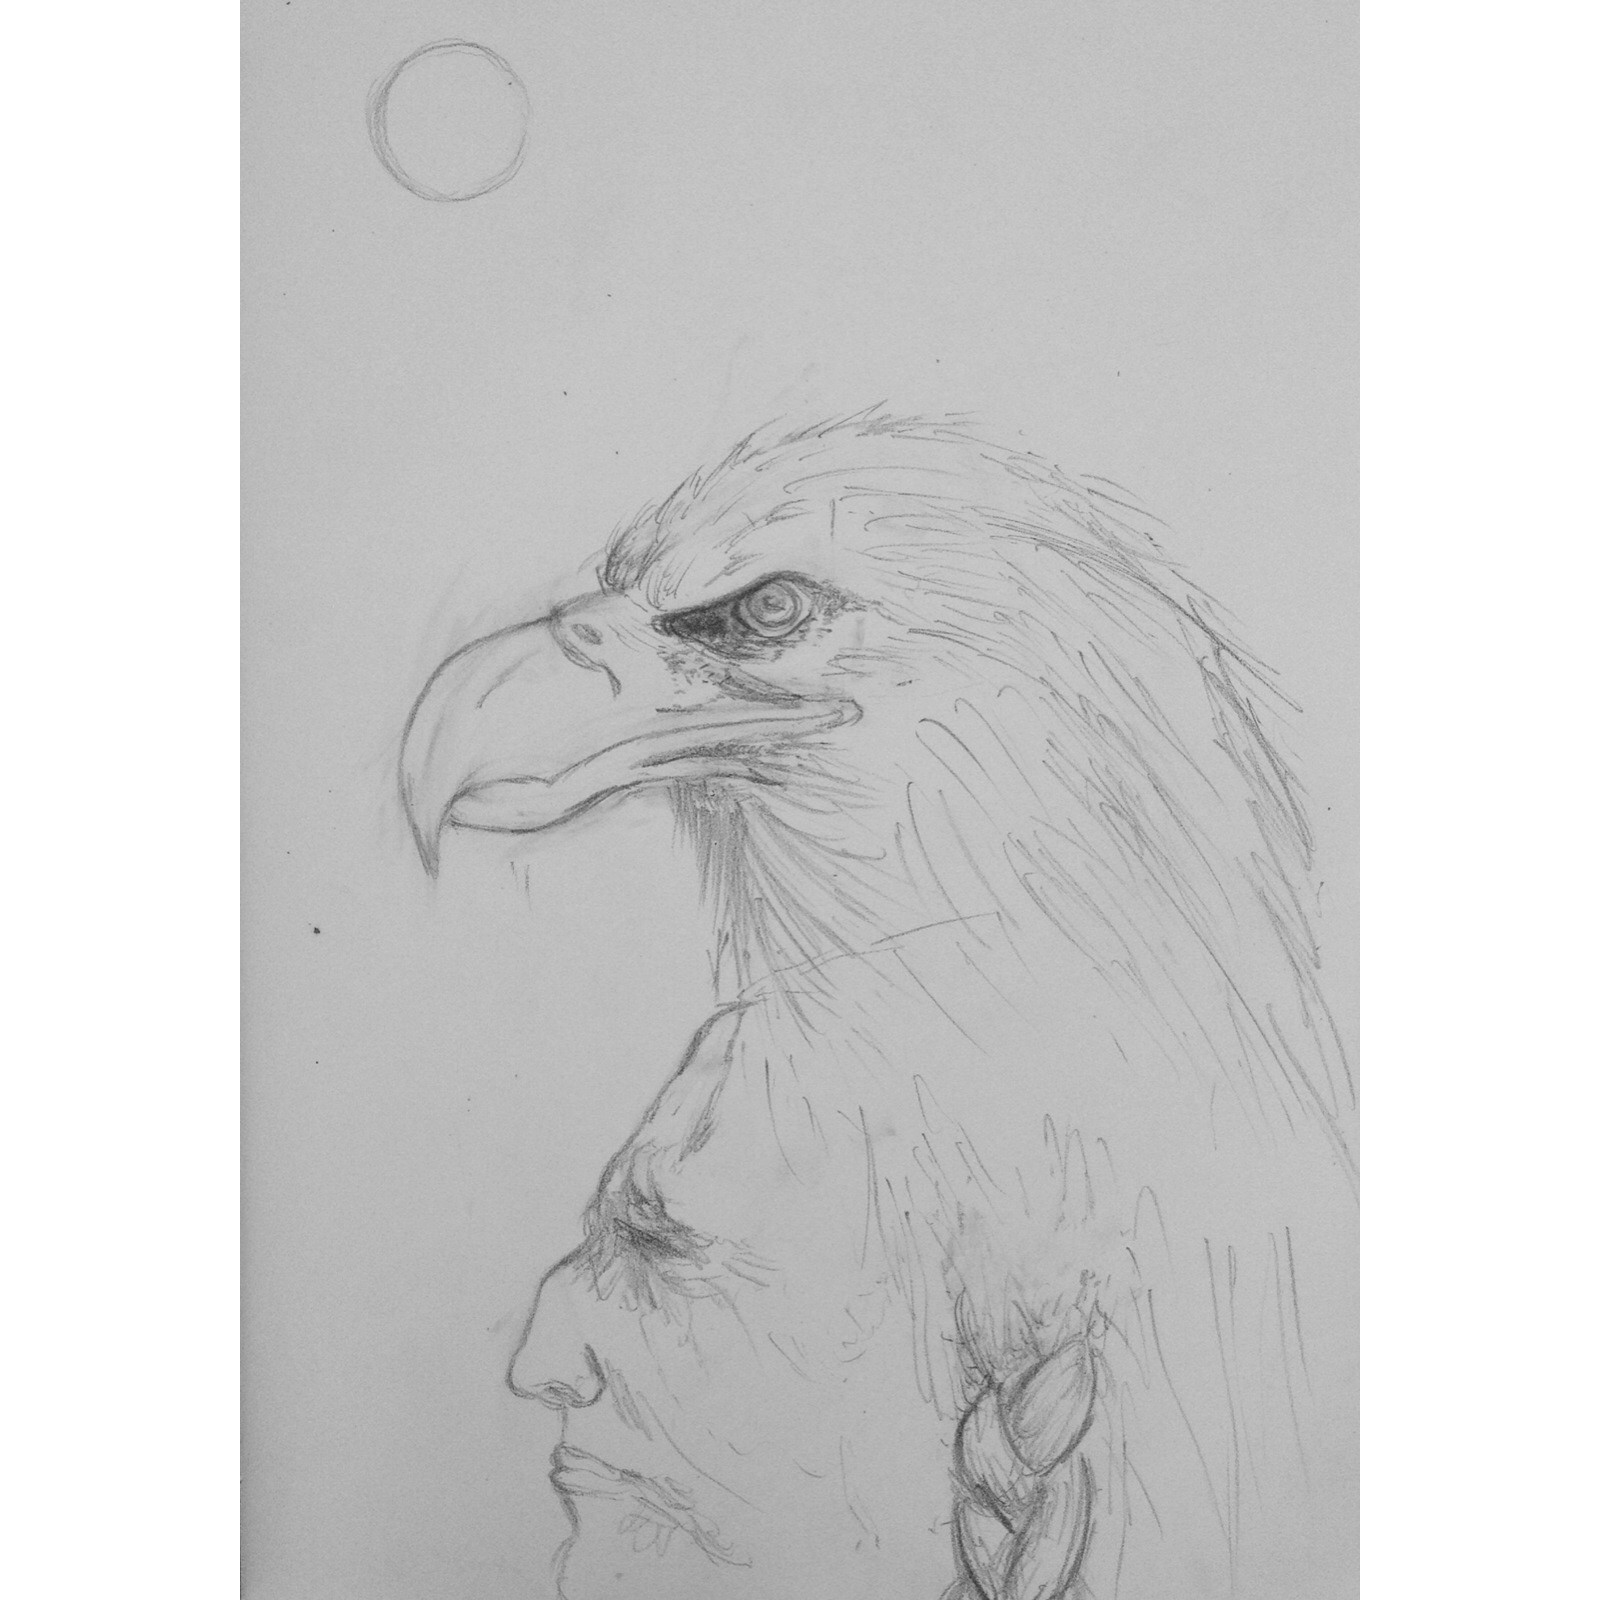 Indian eagle